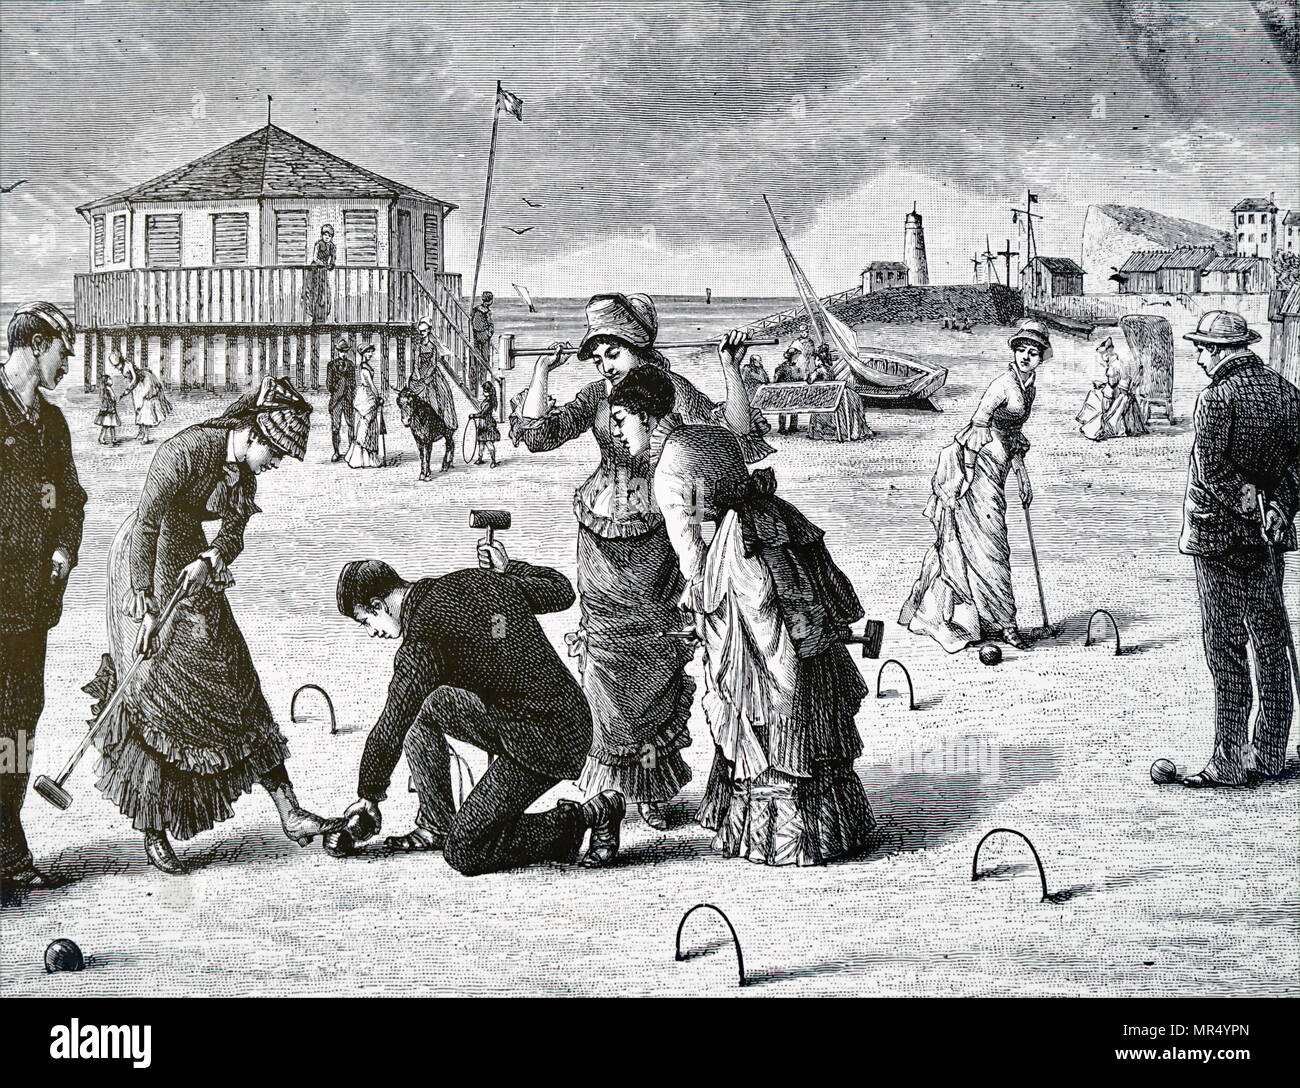 Abbildung: Darstellung einer Partie Krocket am Strand gespielt wird. Vom 19. Jahrhundert Stockfoto